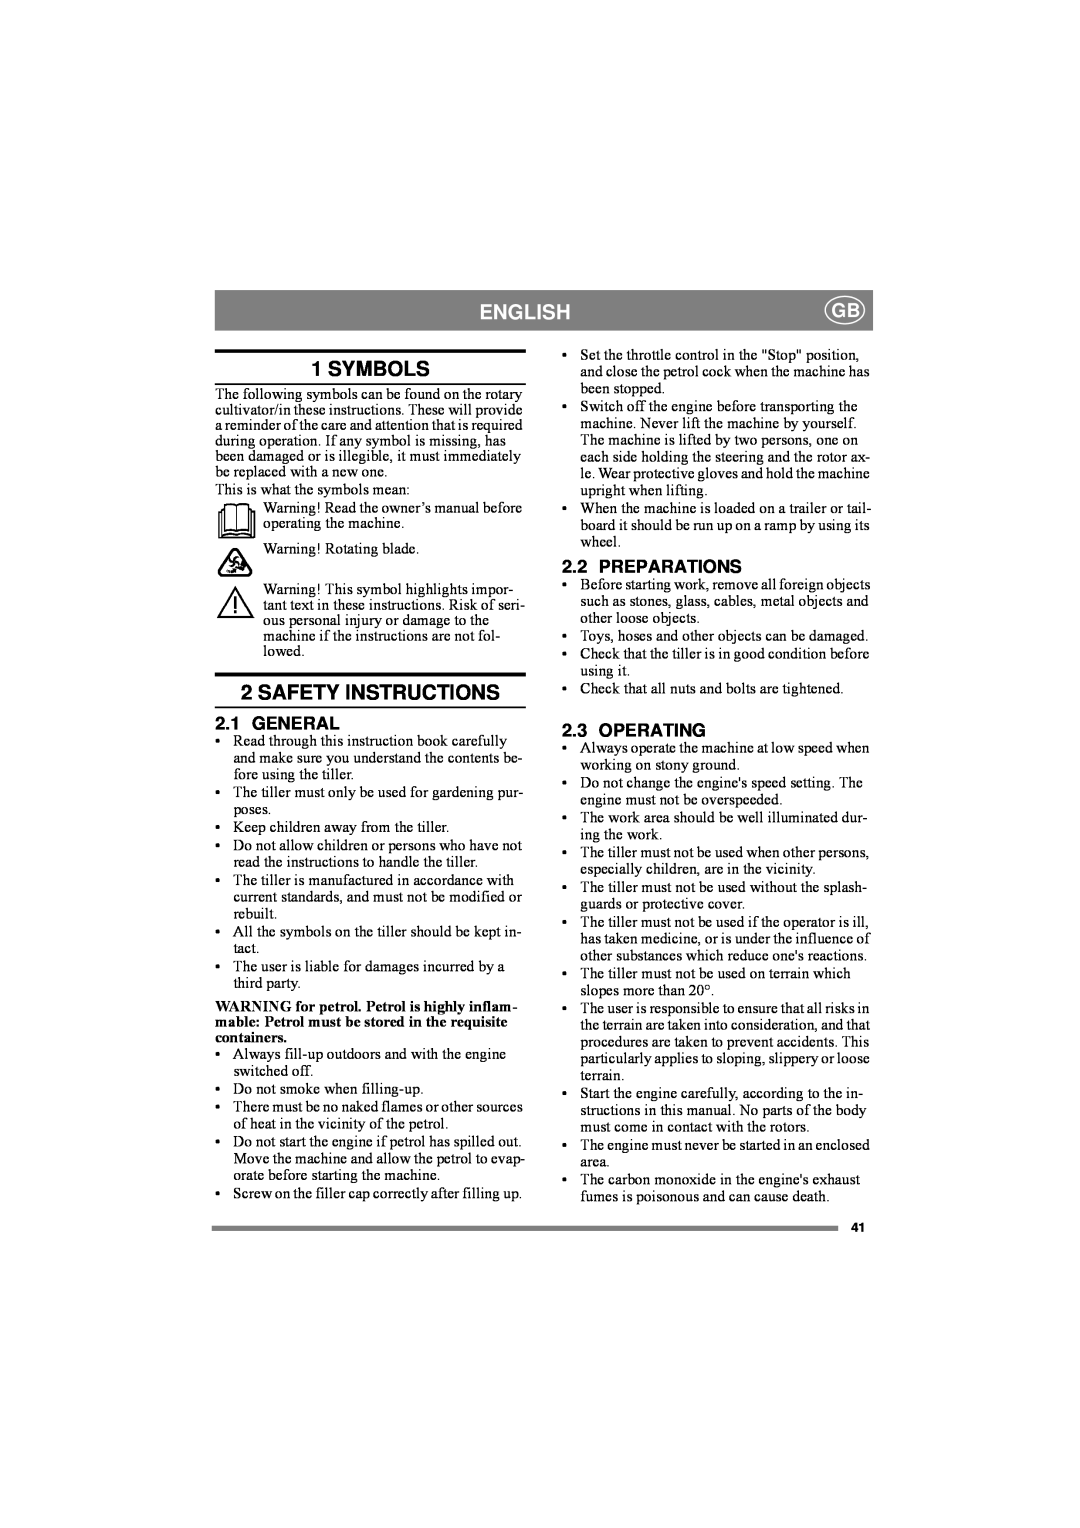 Stiga 82R2-H manual Englishgb, Symbols, Safety Instructions 